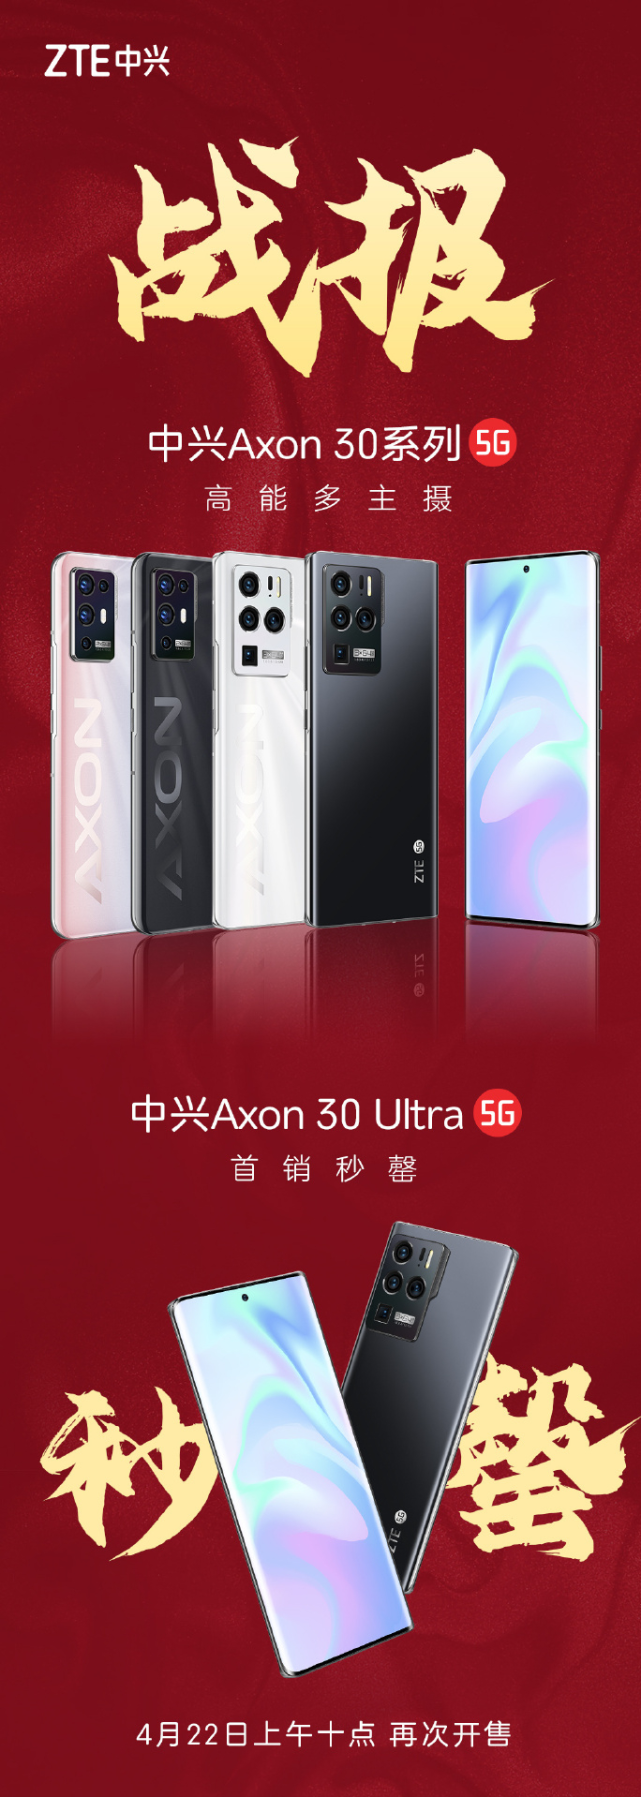 中兴axon30系列既未公布销售额,更没有公布销售手机的具体数量,官微